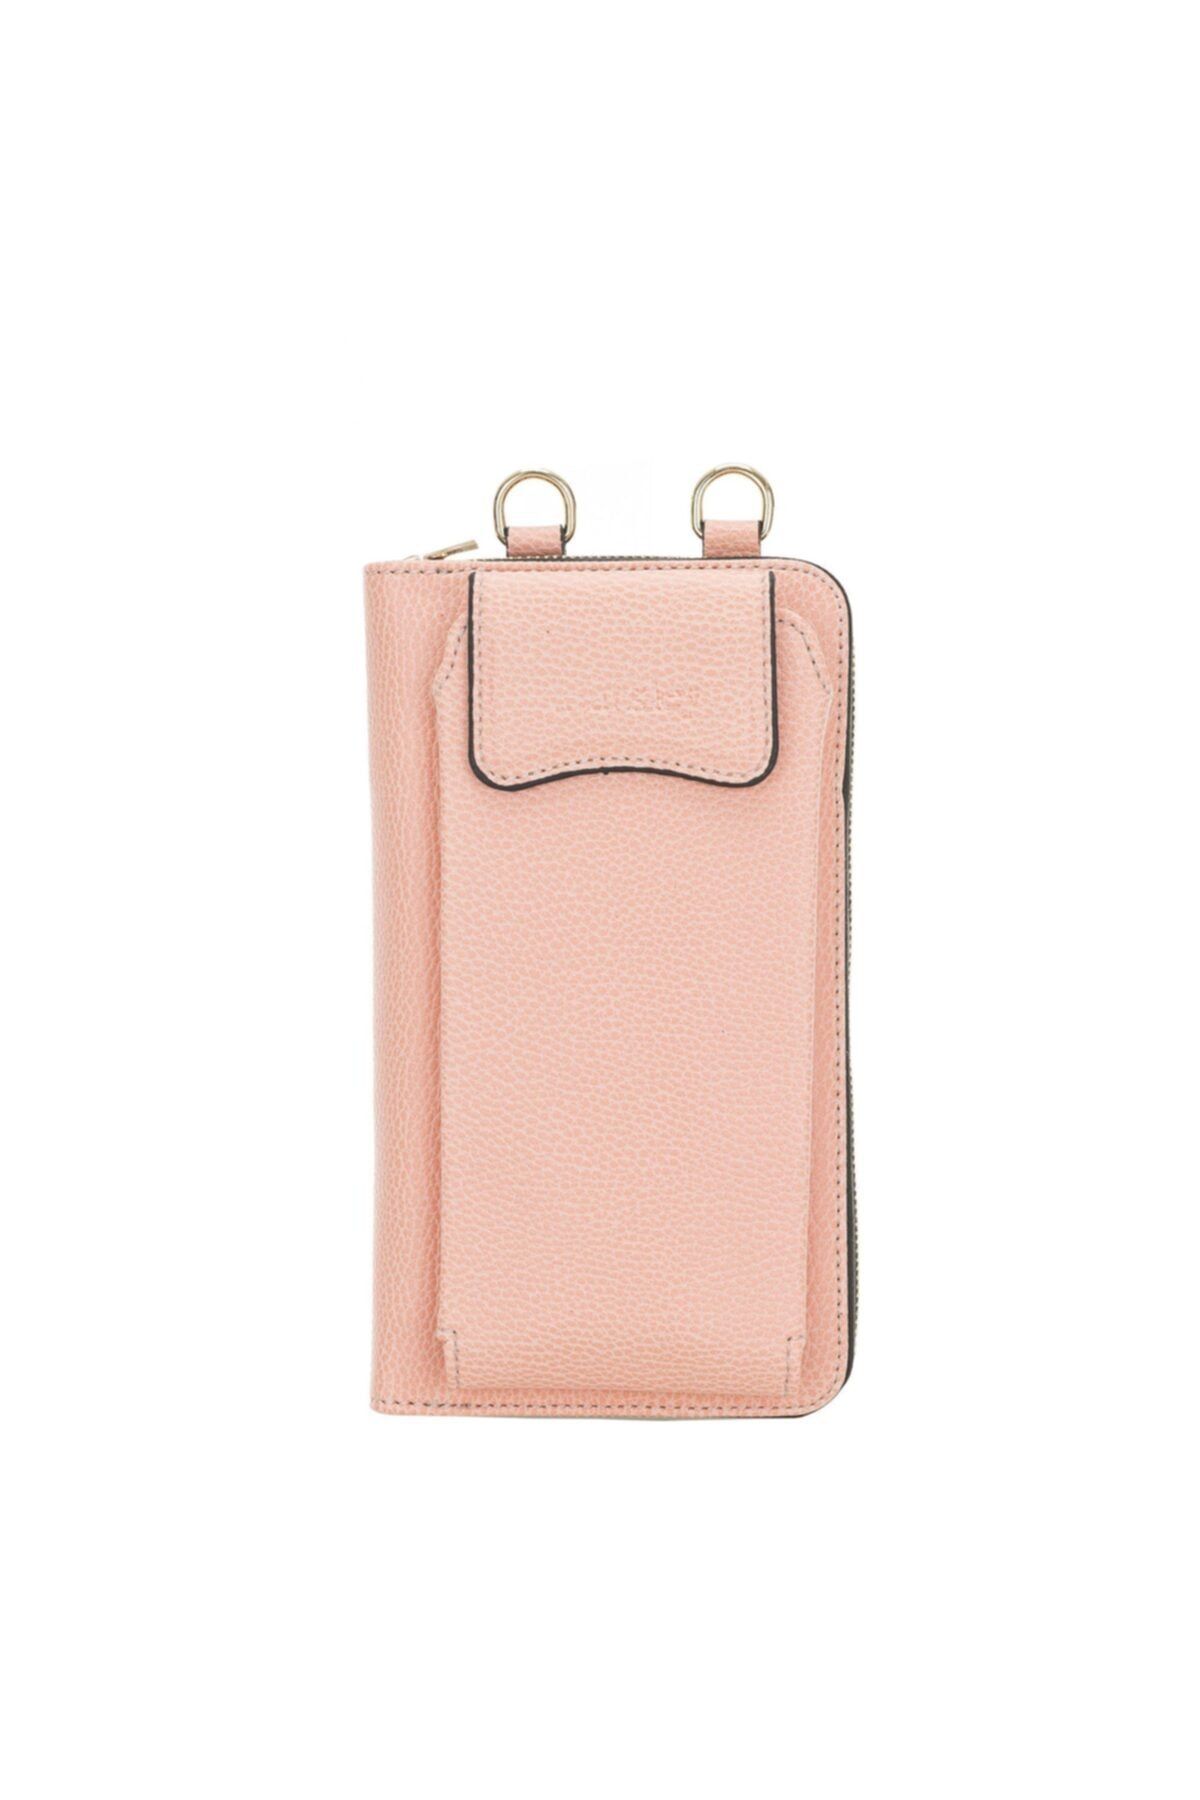 Burkley Joan Kadın Çanta Cüzdan Telefon Kılıfı Grau Rosa 6098